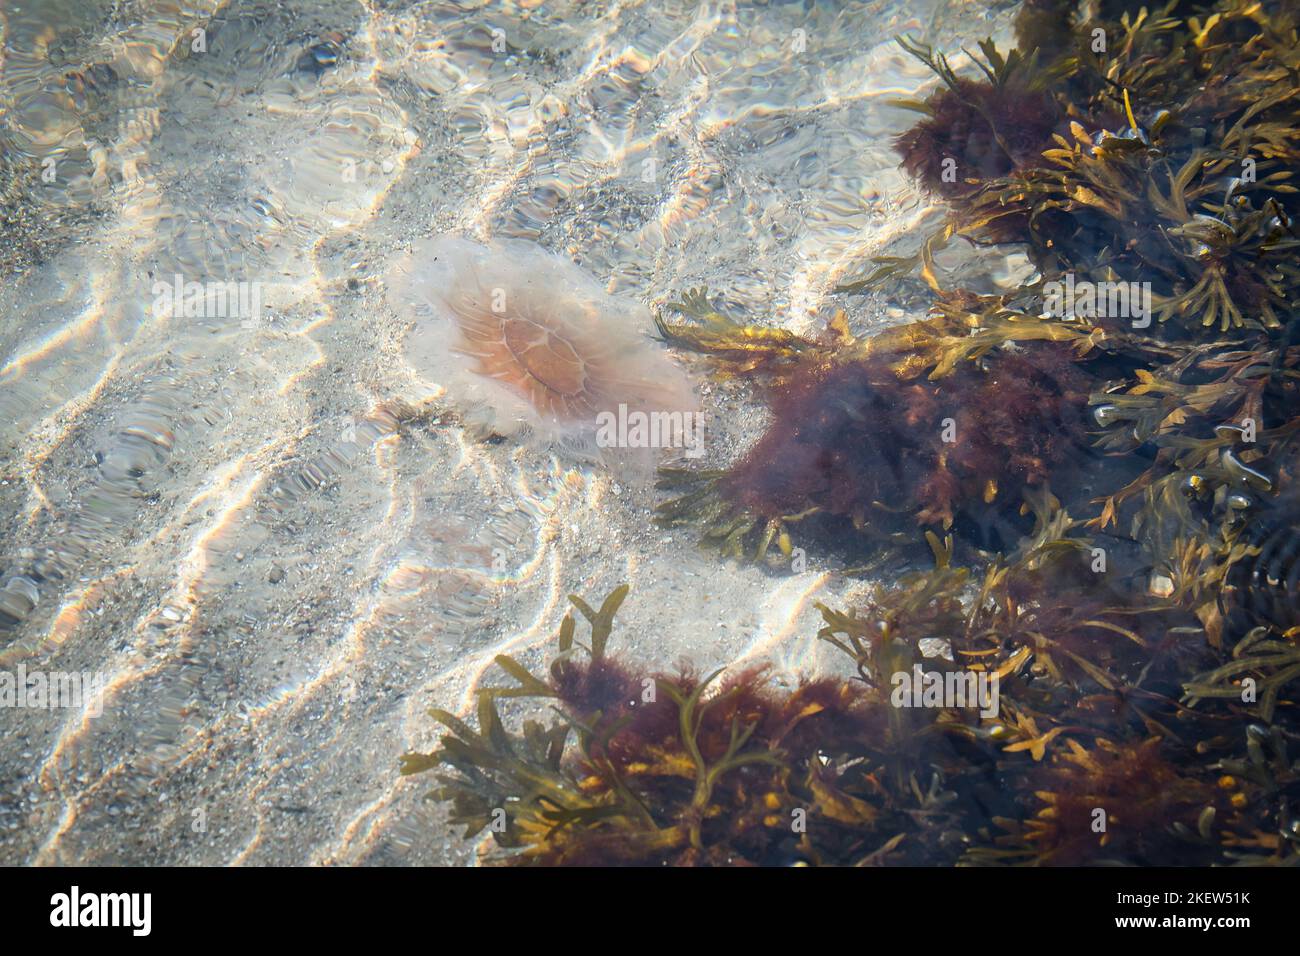 Pompez de la méduse sur la côte en nageant dans l'eau salée. Poncer en arrière-plan dans le motif vagues. Photo d'animal de la nature Banque D'Images